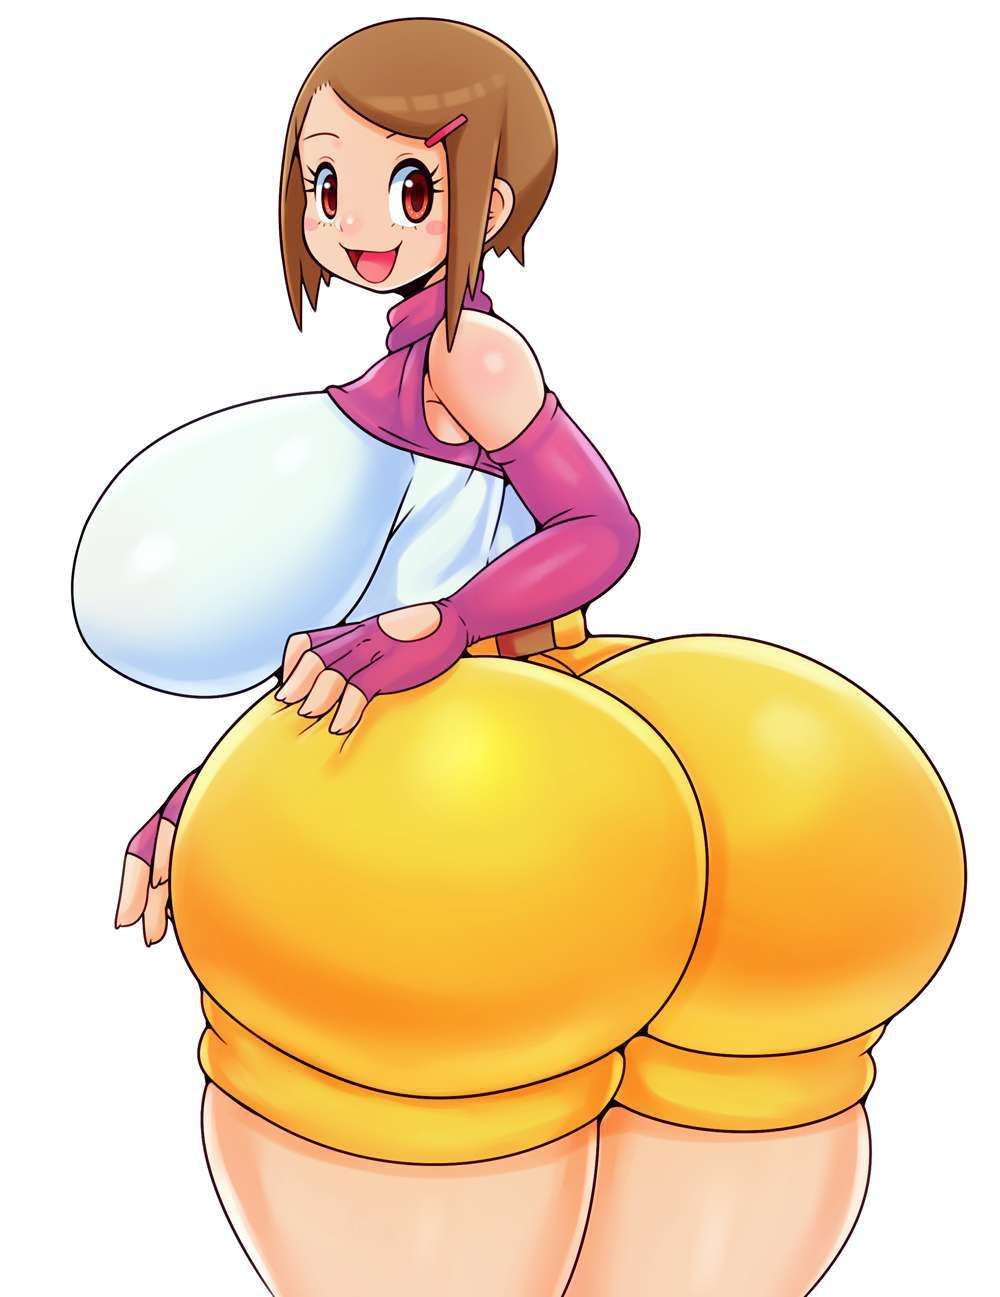 【Digimon Adventure】Erotic image of Hikari Yagami 14